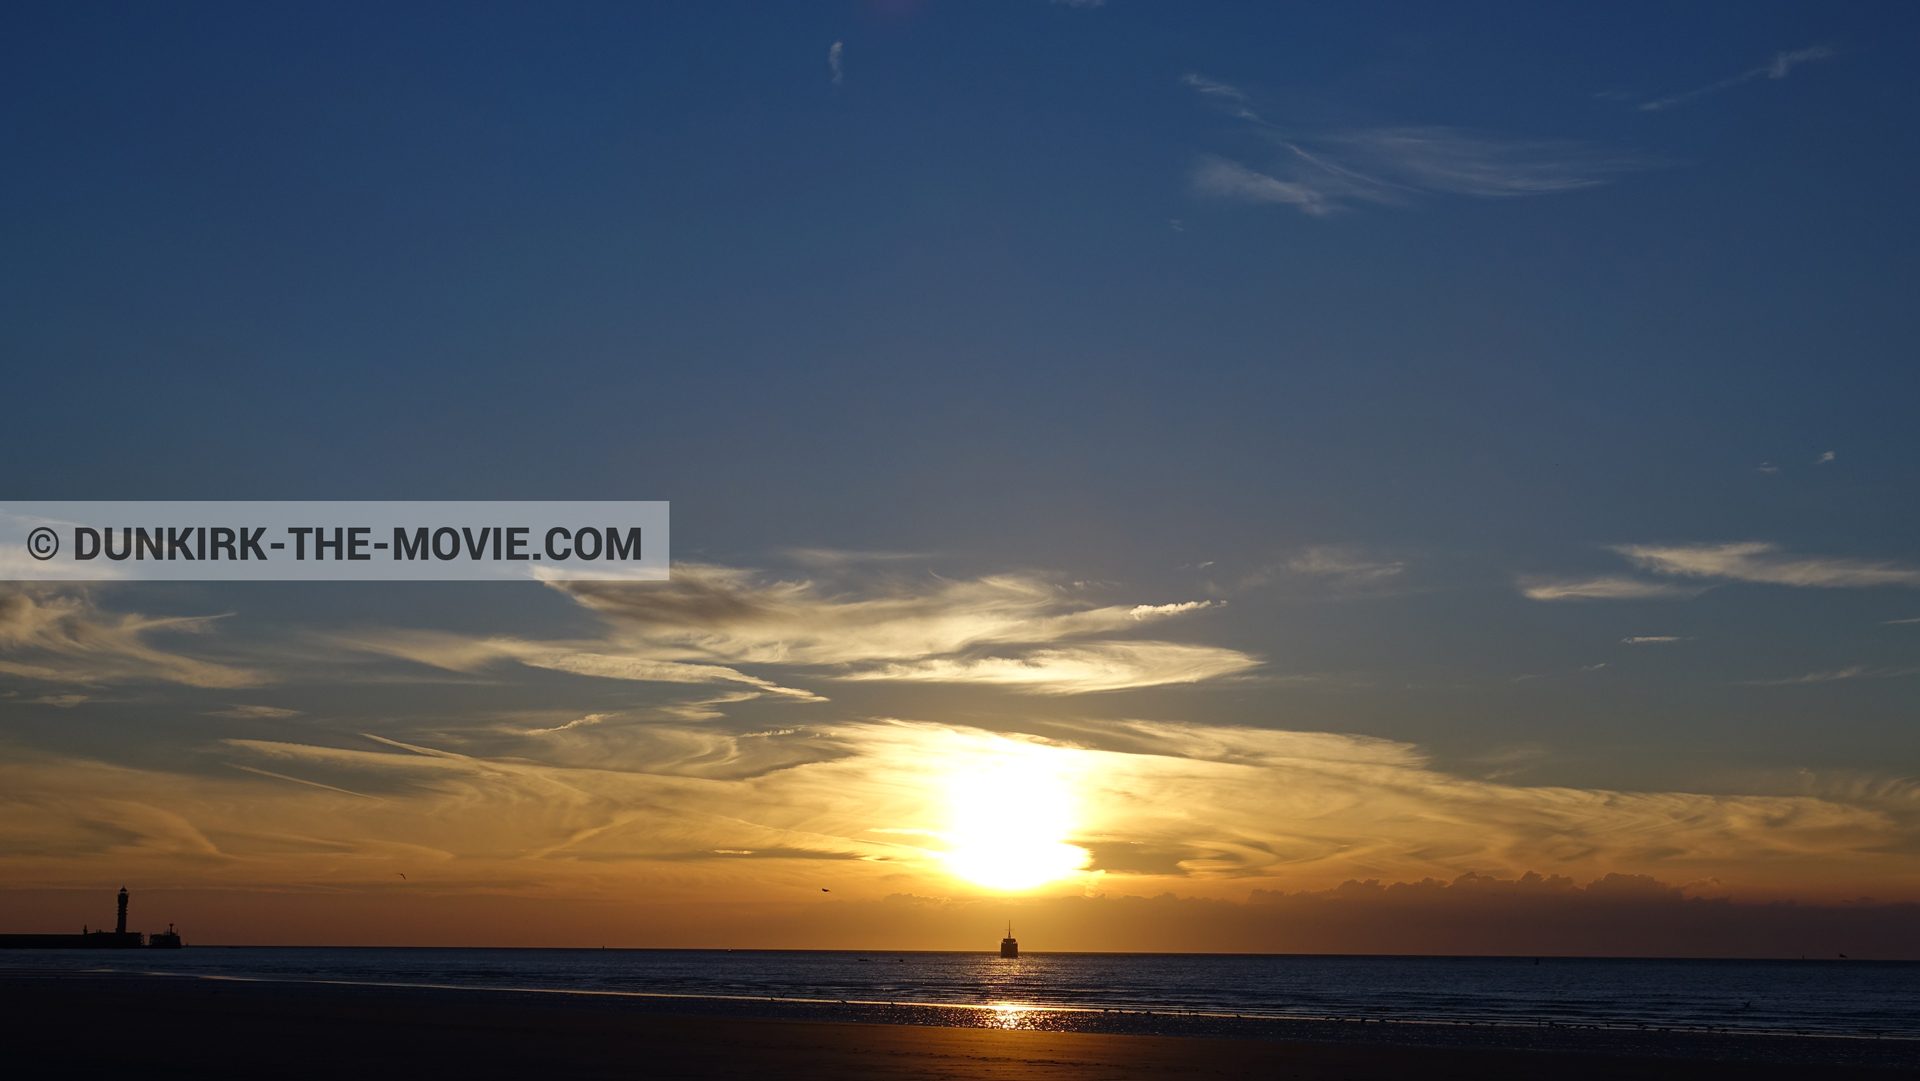 Fotos con cielo azul, cielo anaranjado, mares calma, faro de Saint-Pol-sur-Mer,  durante el rodaje de la película Dunkerque de Nolan